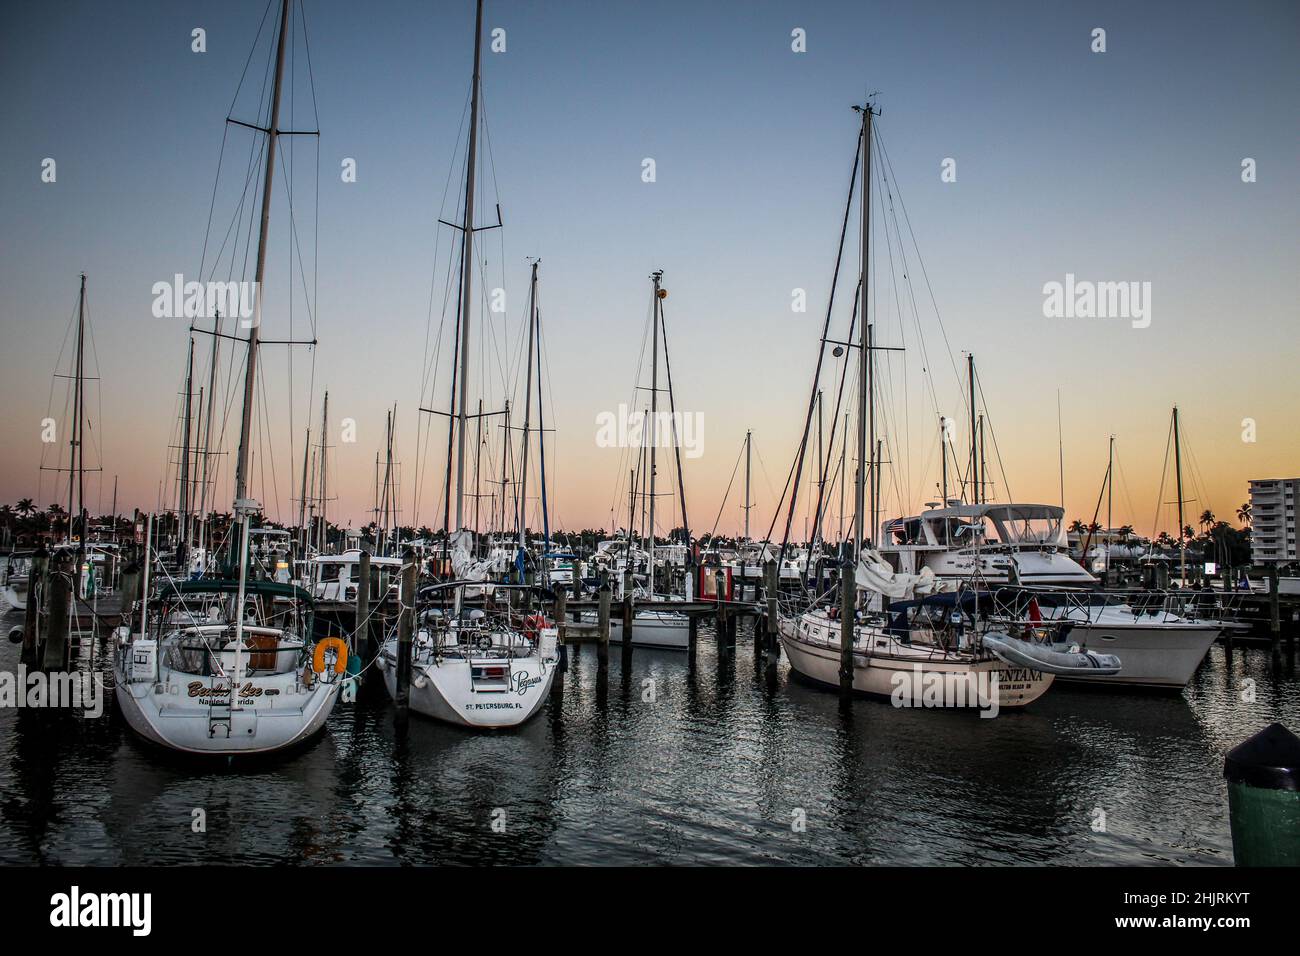 Der wunderschöne Sonnenuntergang im Hintergrund und alle Masten der hoch stehenden Boote. Das Wasser ist ruhig und reflektiert. Stockfoto